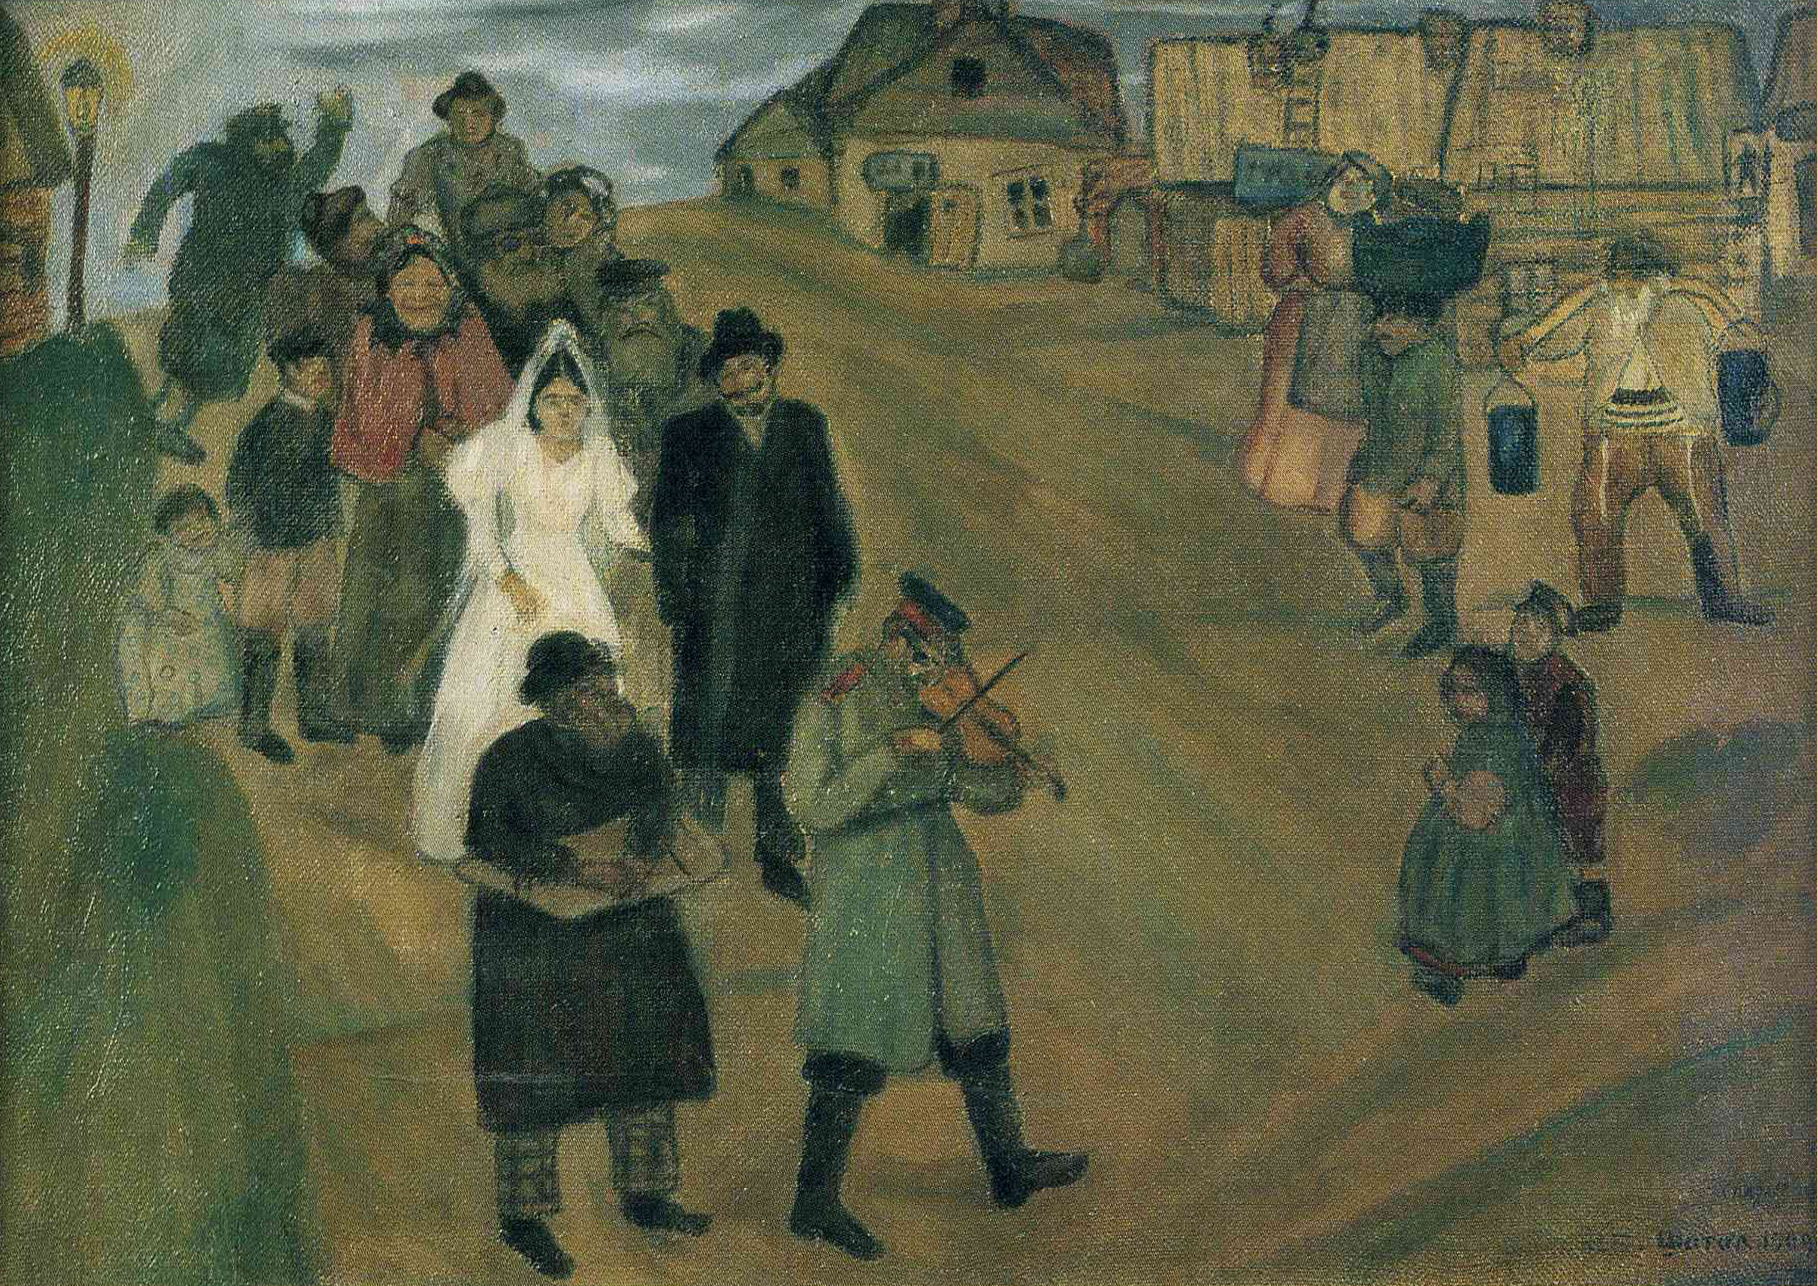 Russian-Wedding-1909-Chagall